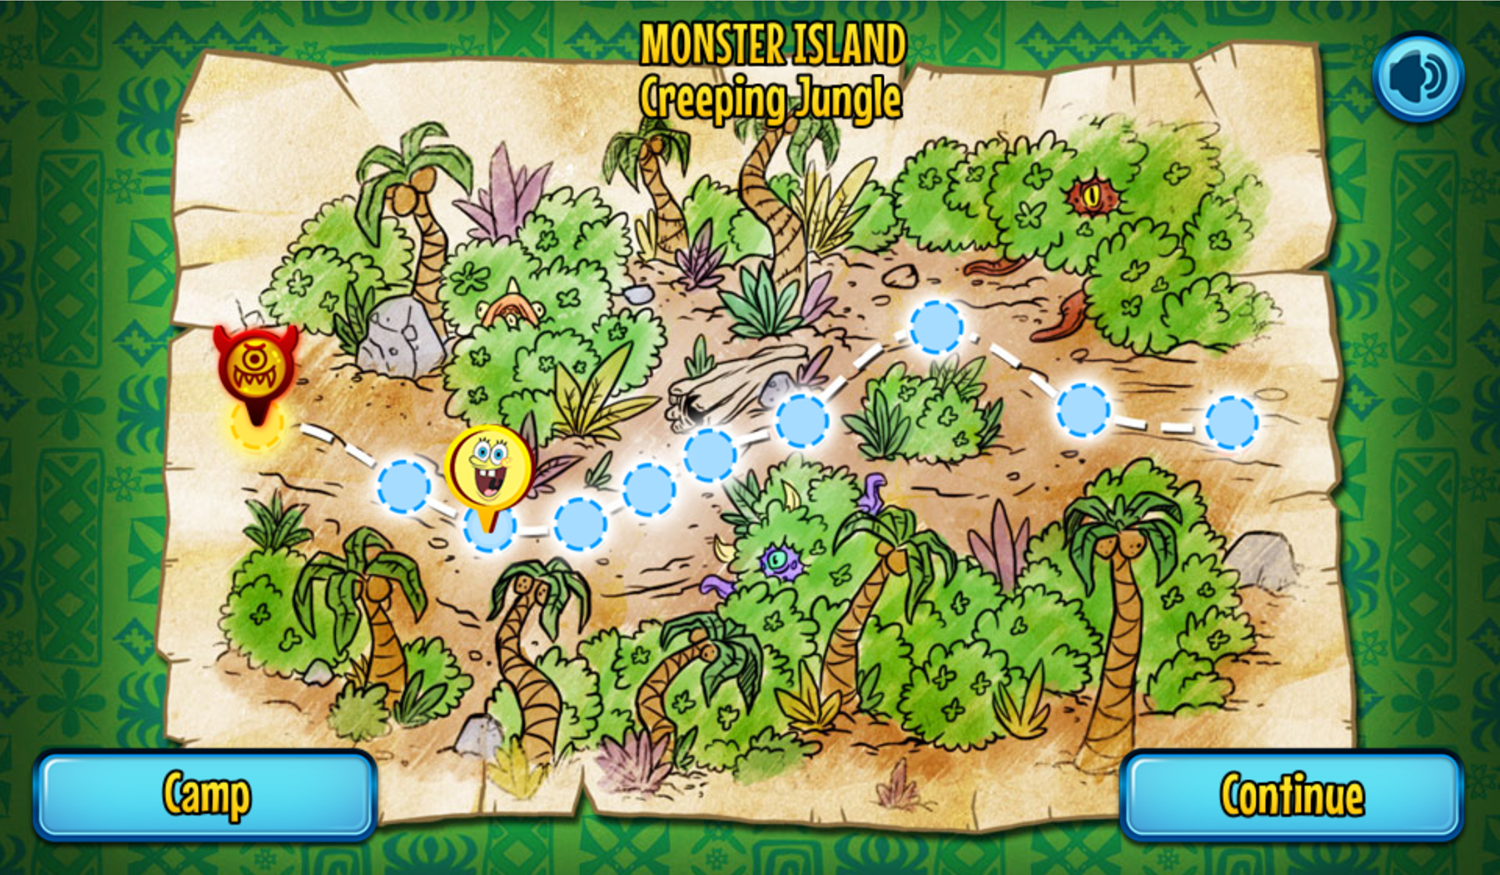 SpongeBob SquarePants Monster Island Adventure Game Creeping Jungle Map Screen Screenshot.